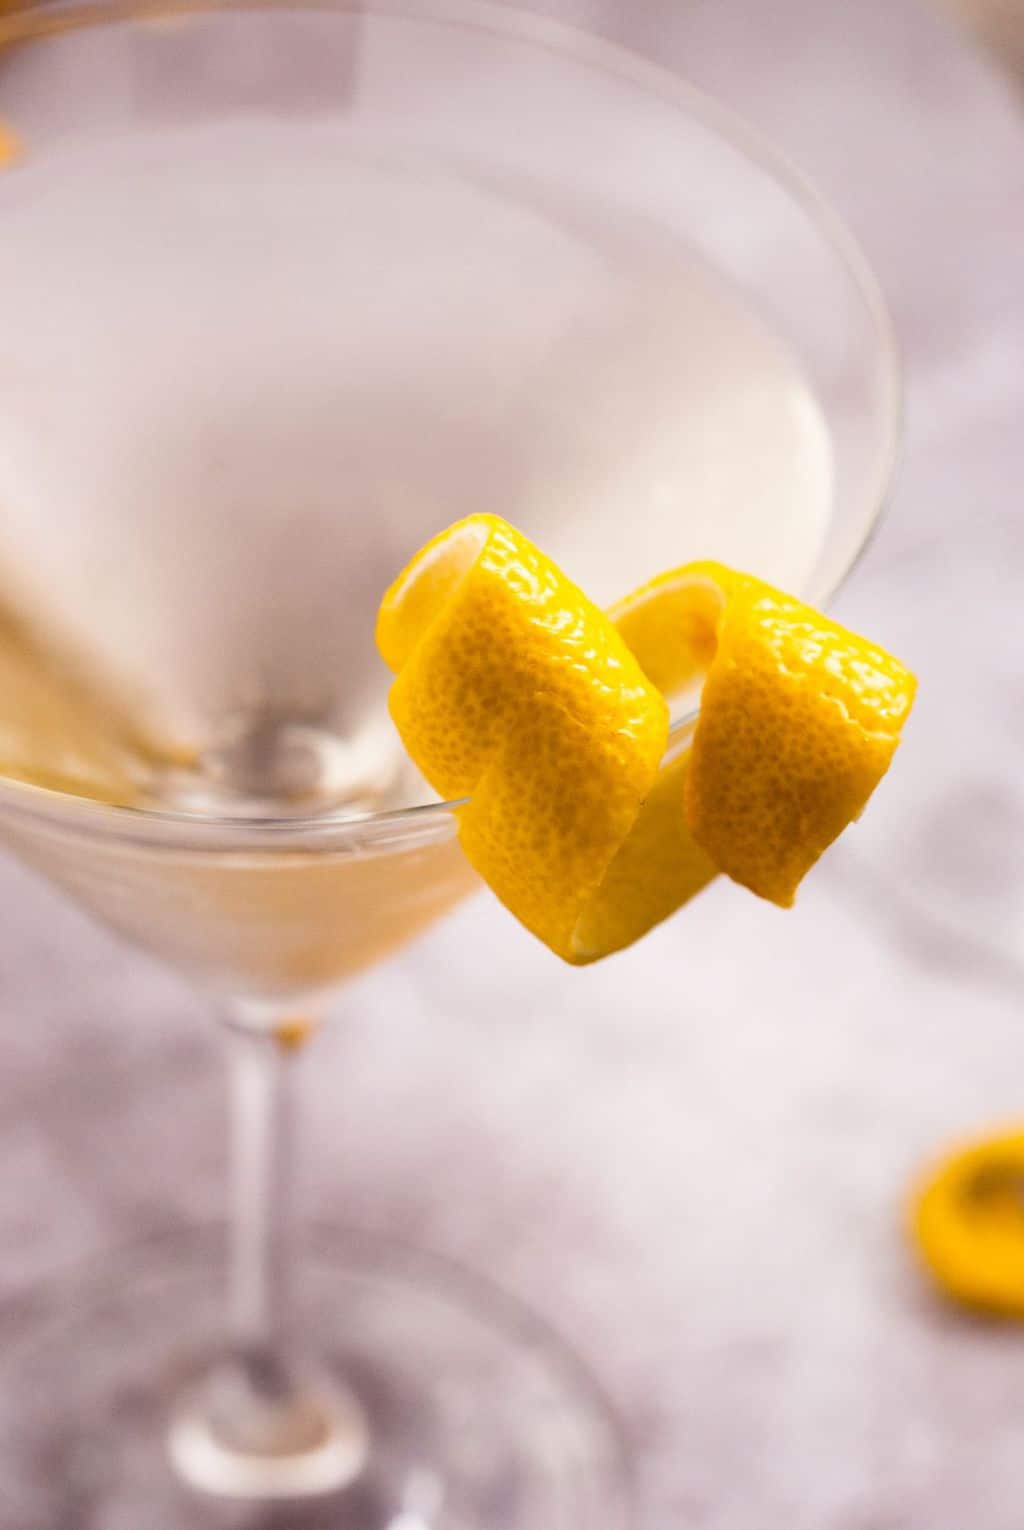 how do you make a martini - a close up shot of the lemon garnish